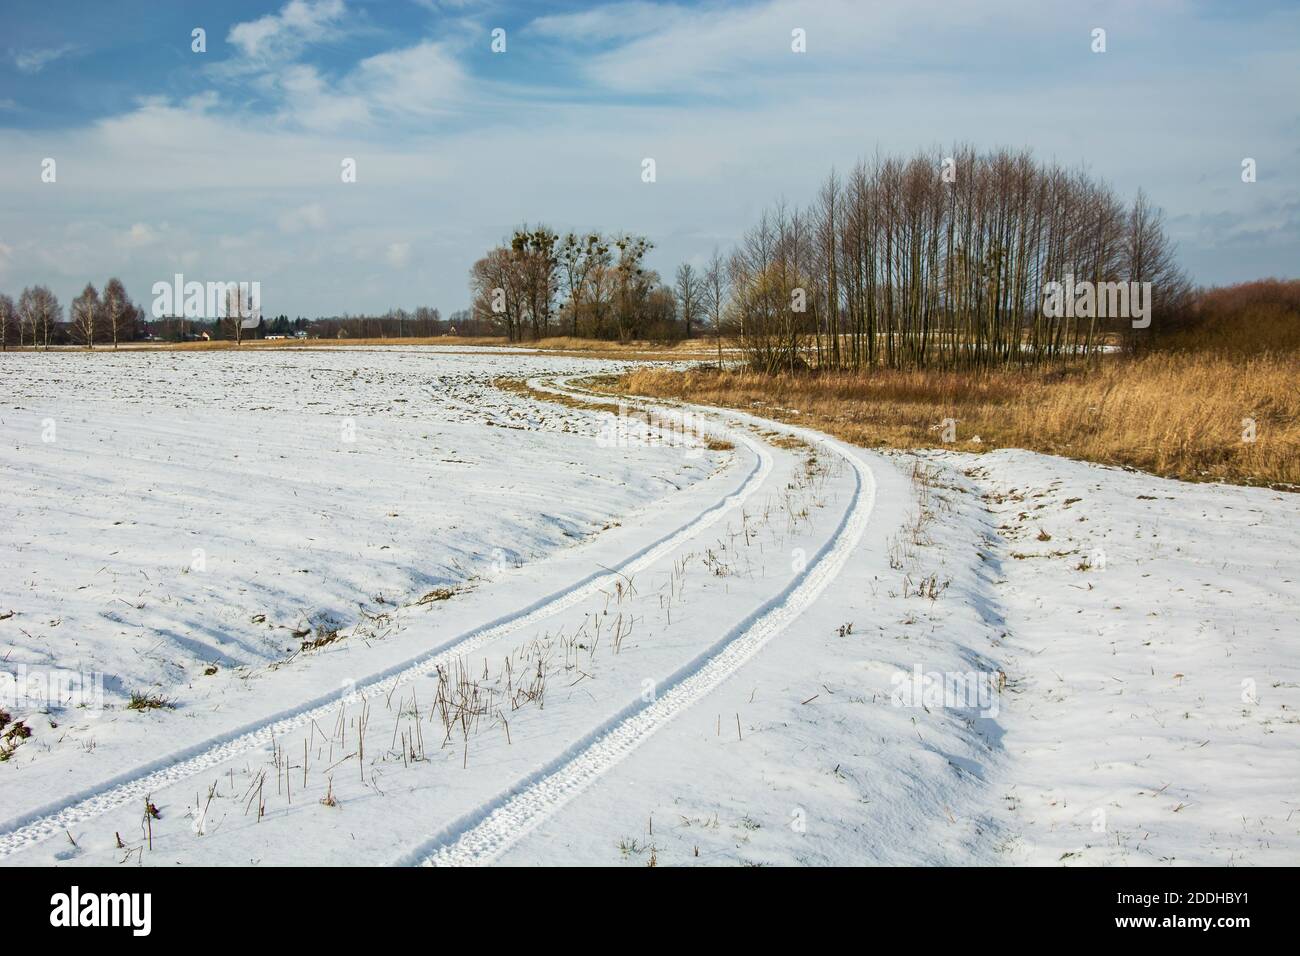 Traces de roues dans la neige sur une route de terre, arbres et ciel, vue d'hiver Banque D'Images